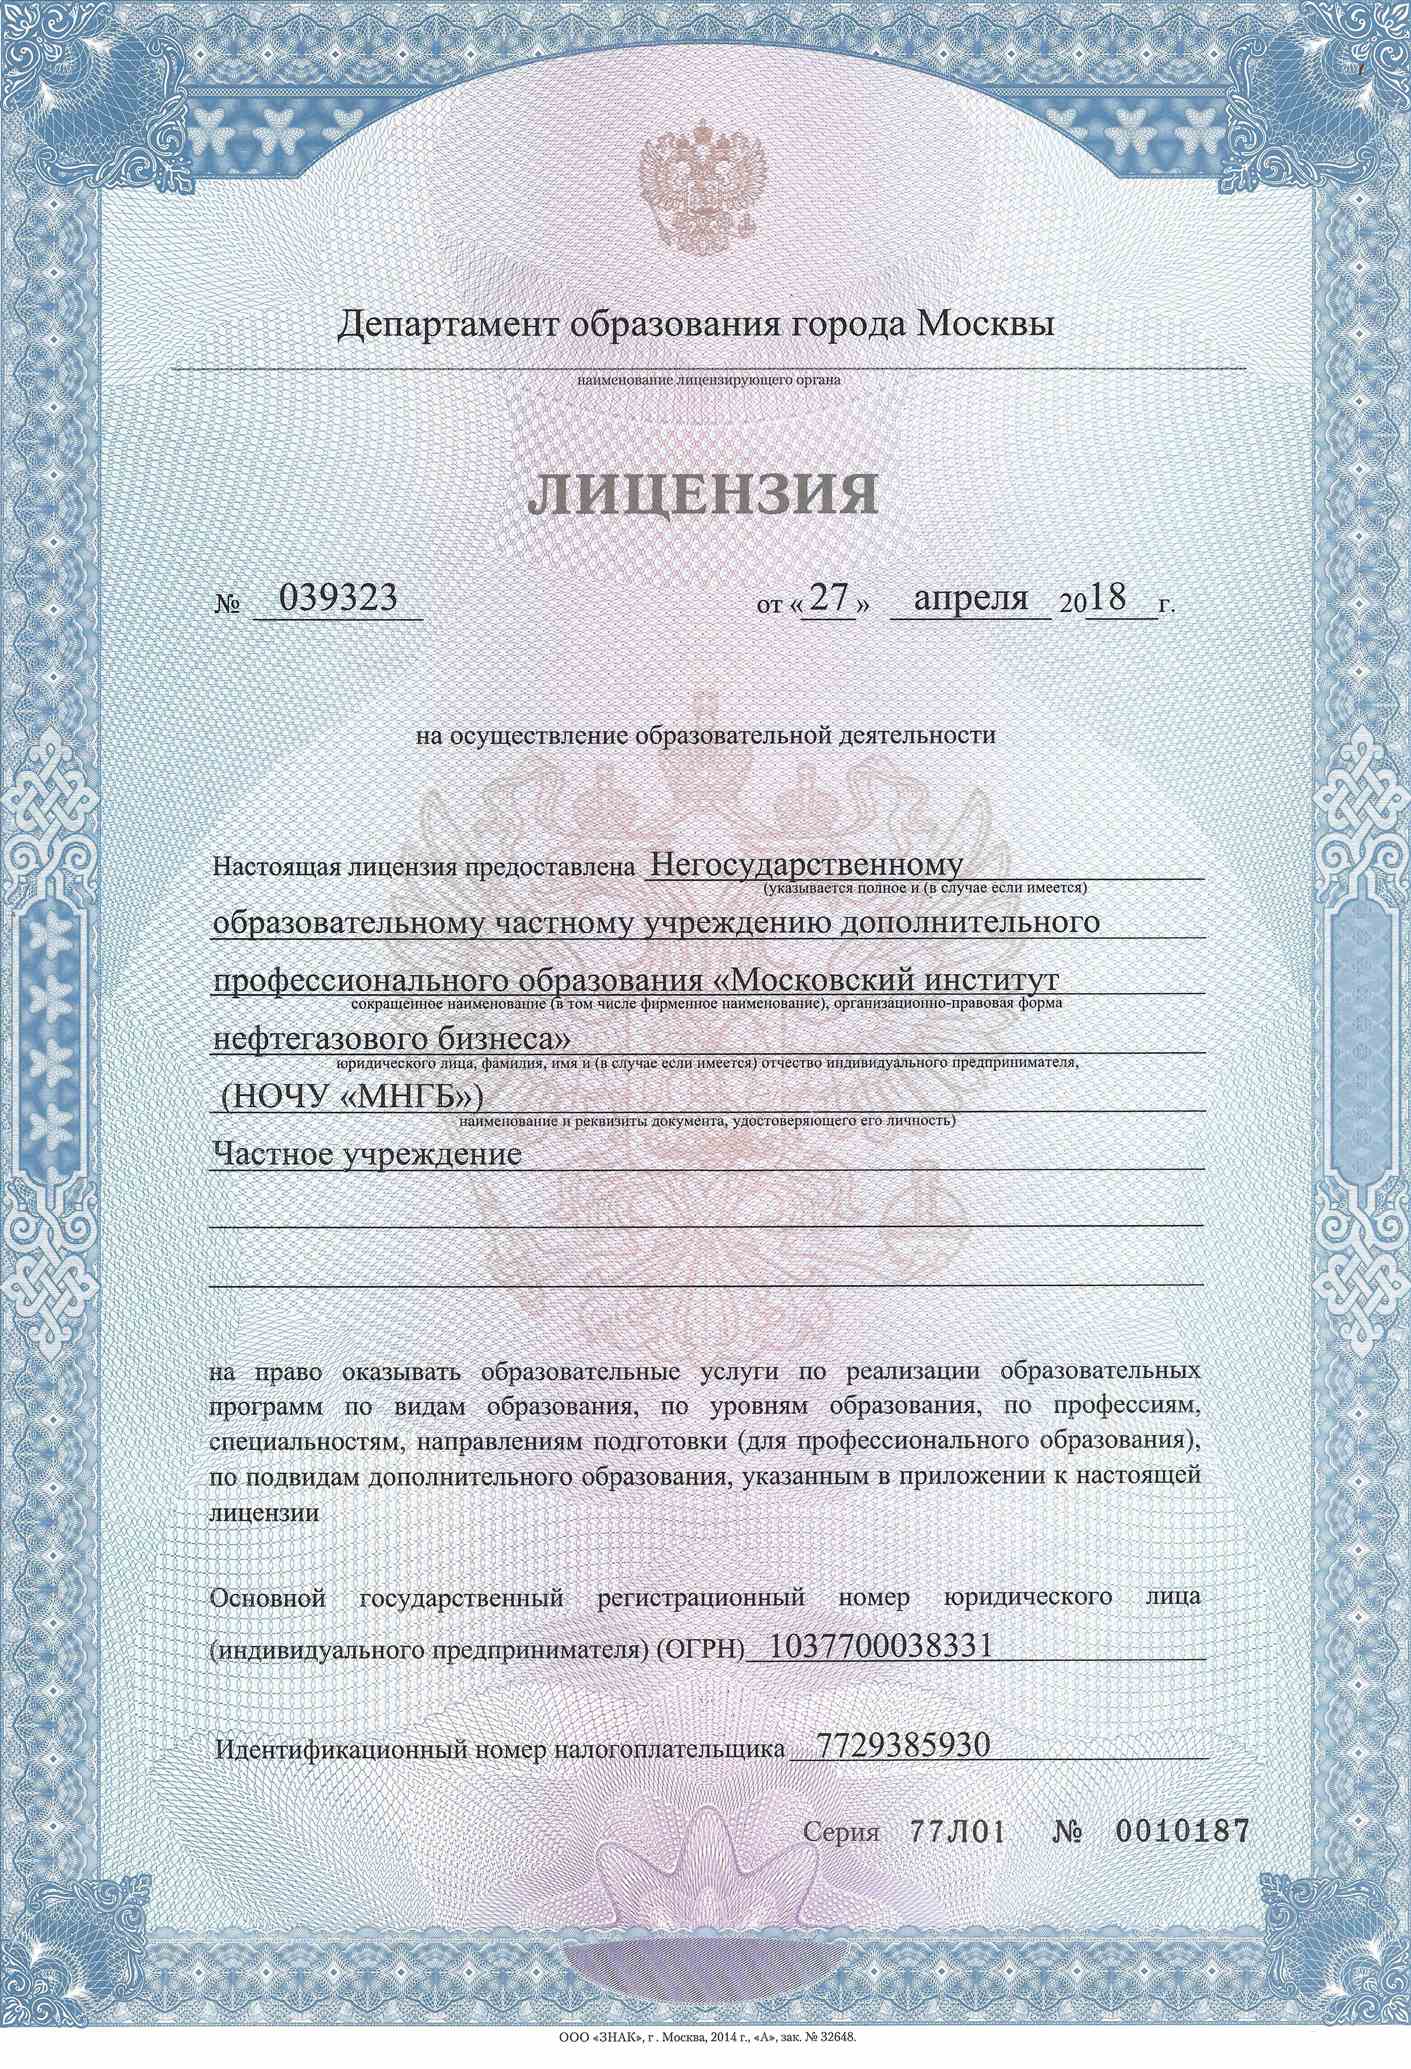 Лицензия Московского института нефтегазового бизнеса на образовательную деятельность